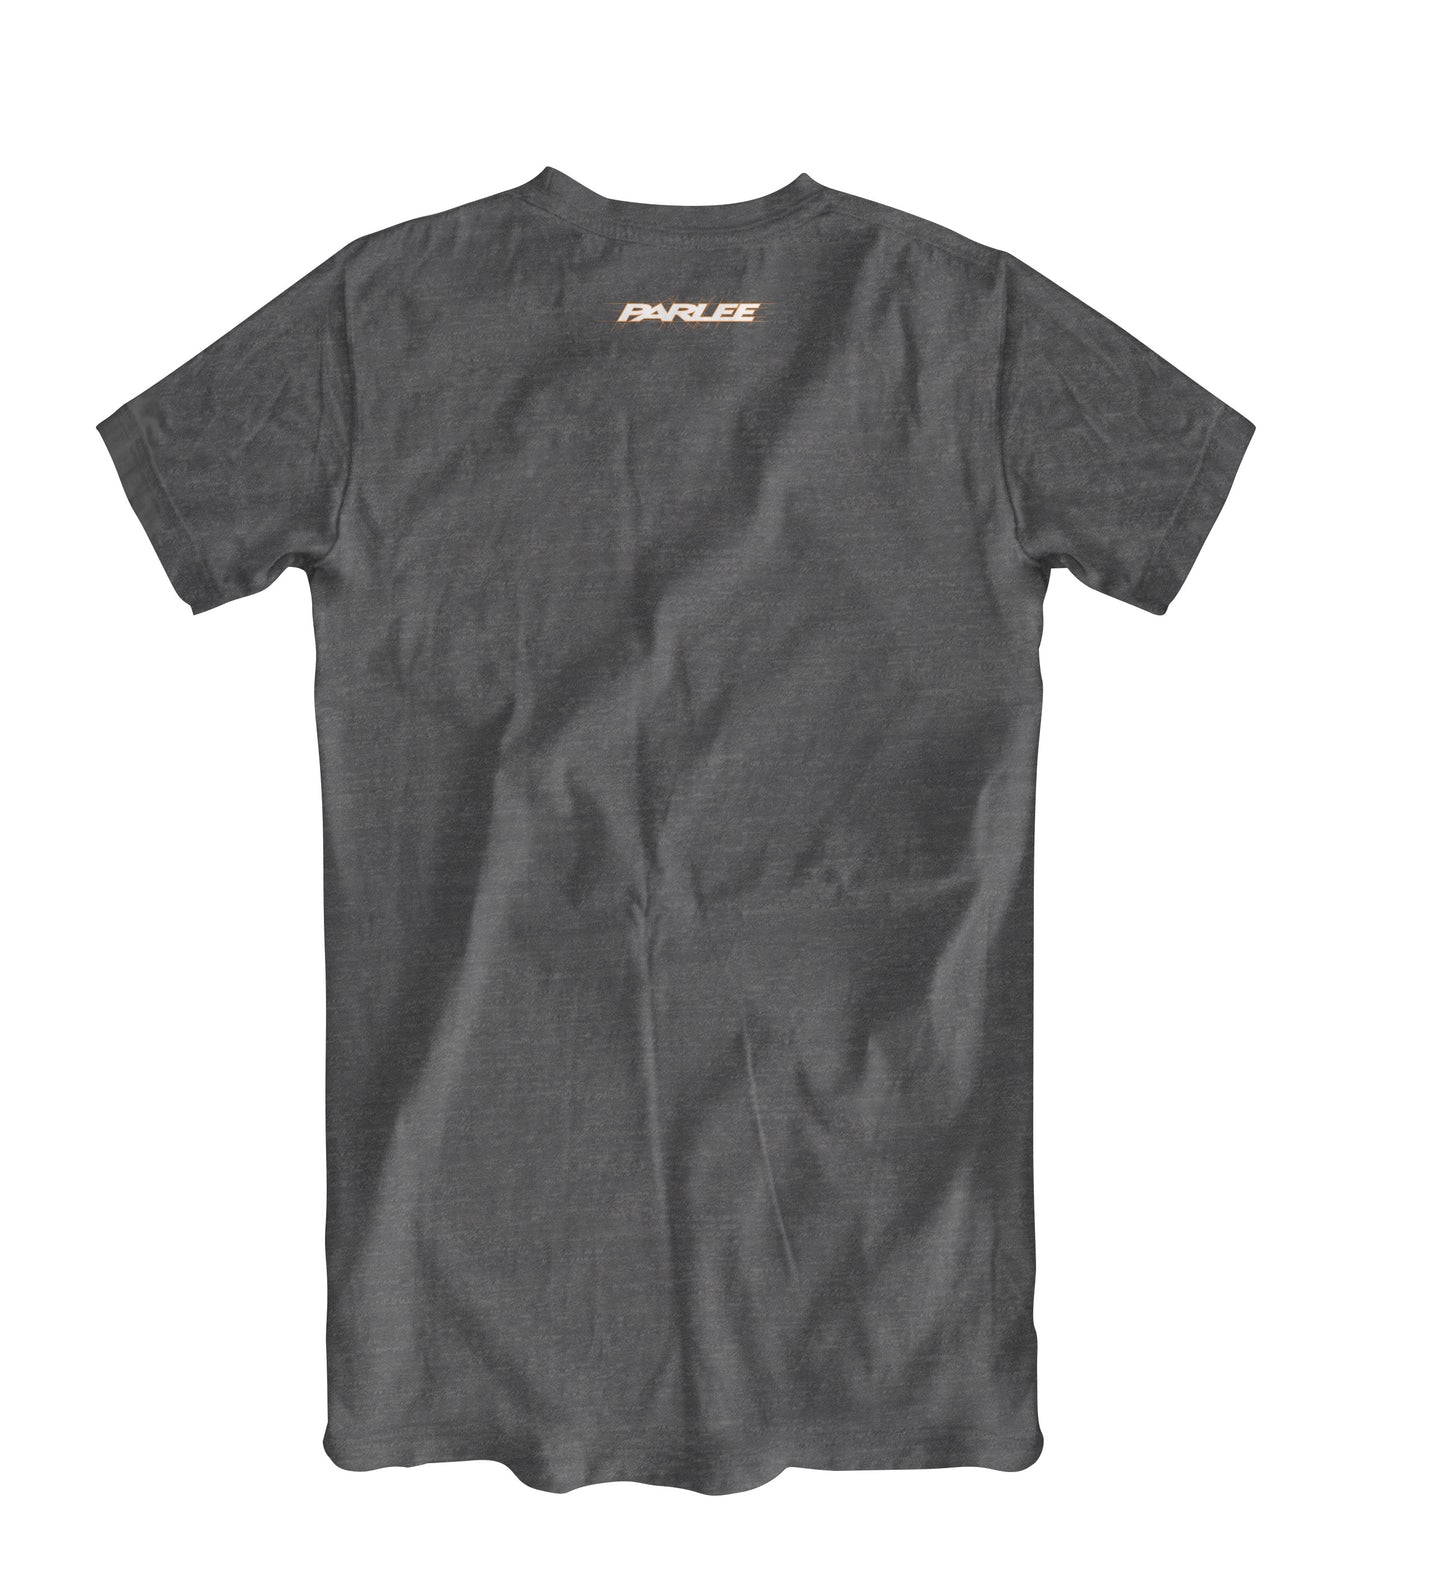 Chebacco T-Shirt, Nardo Gray